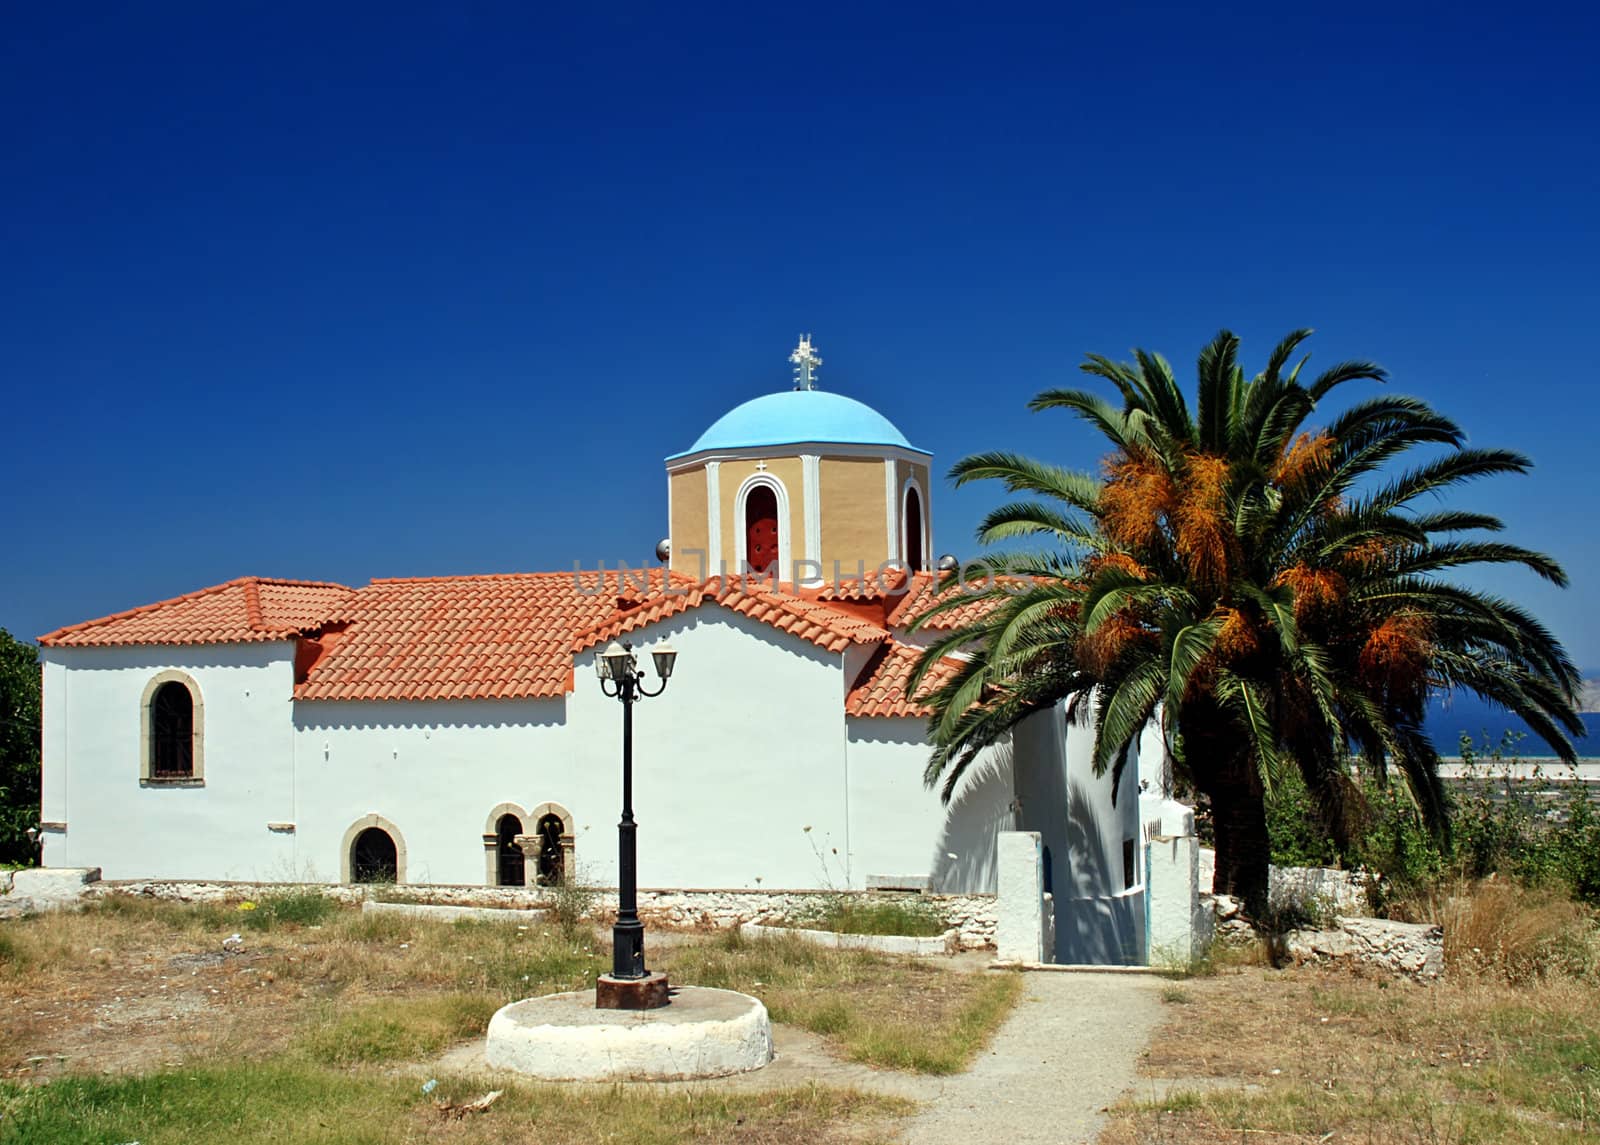 Greek orthodox church, lantern and palm